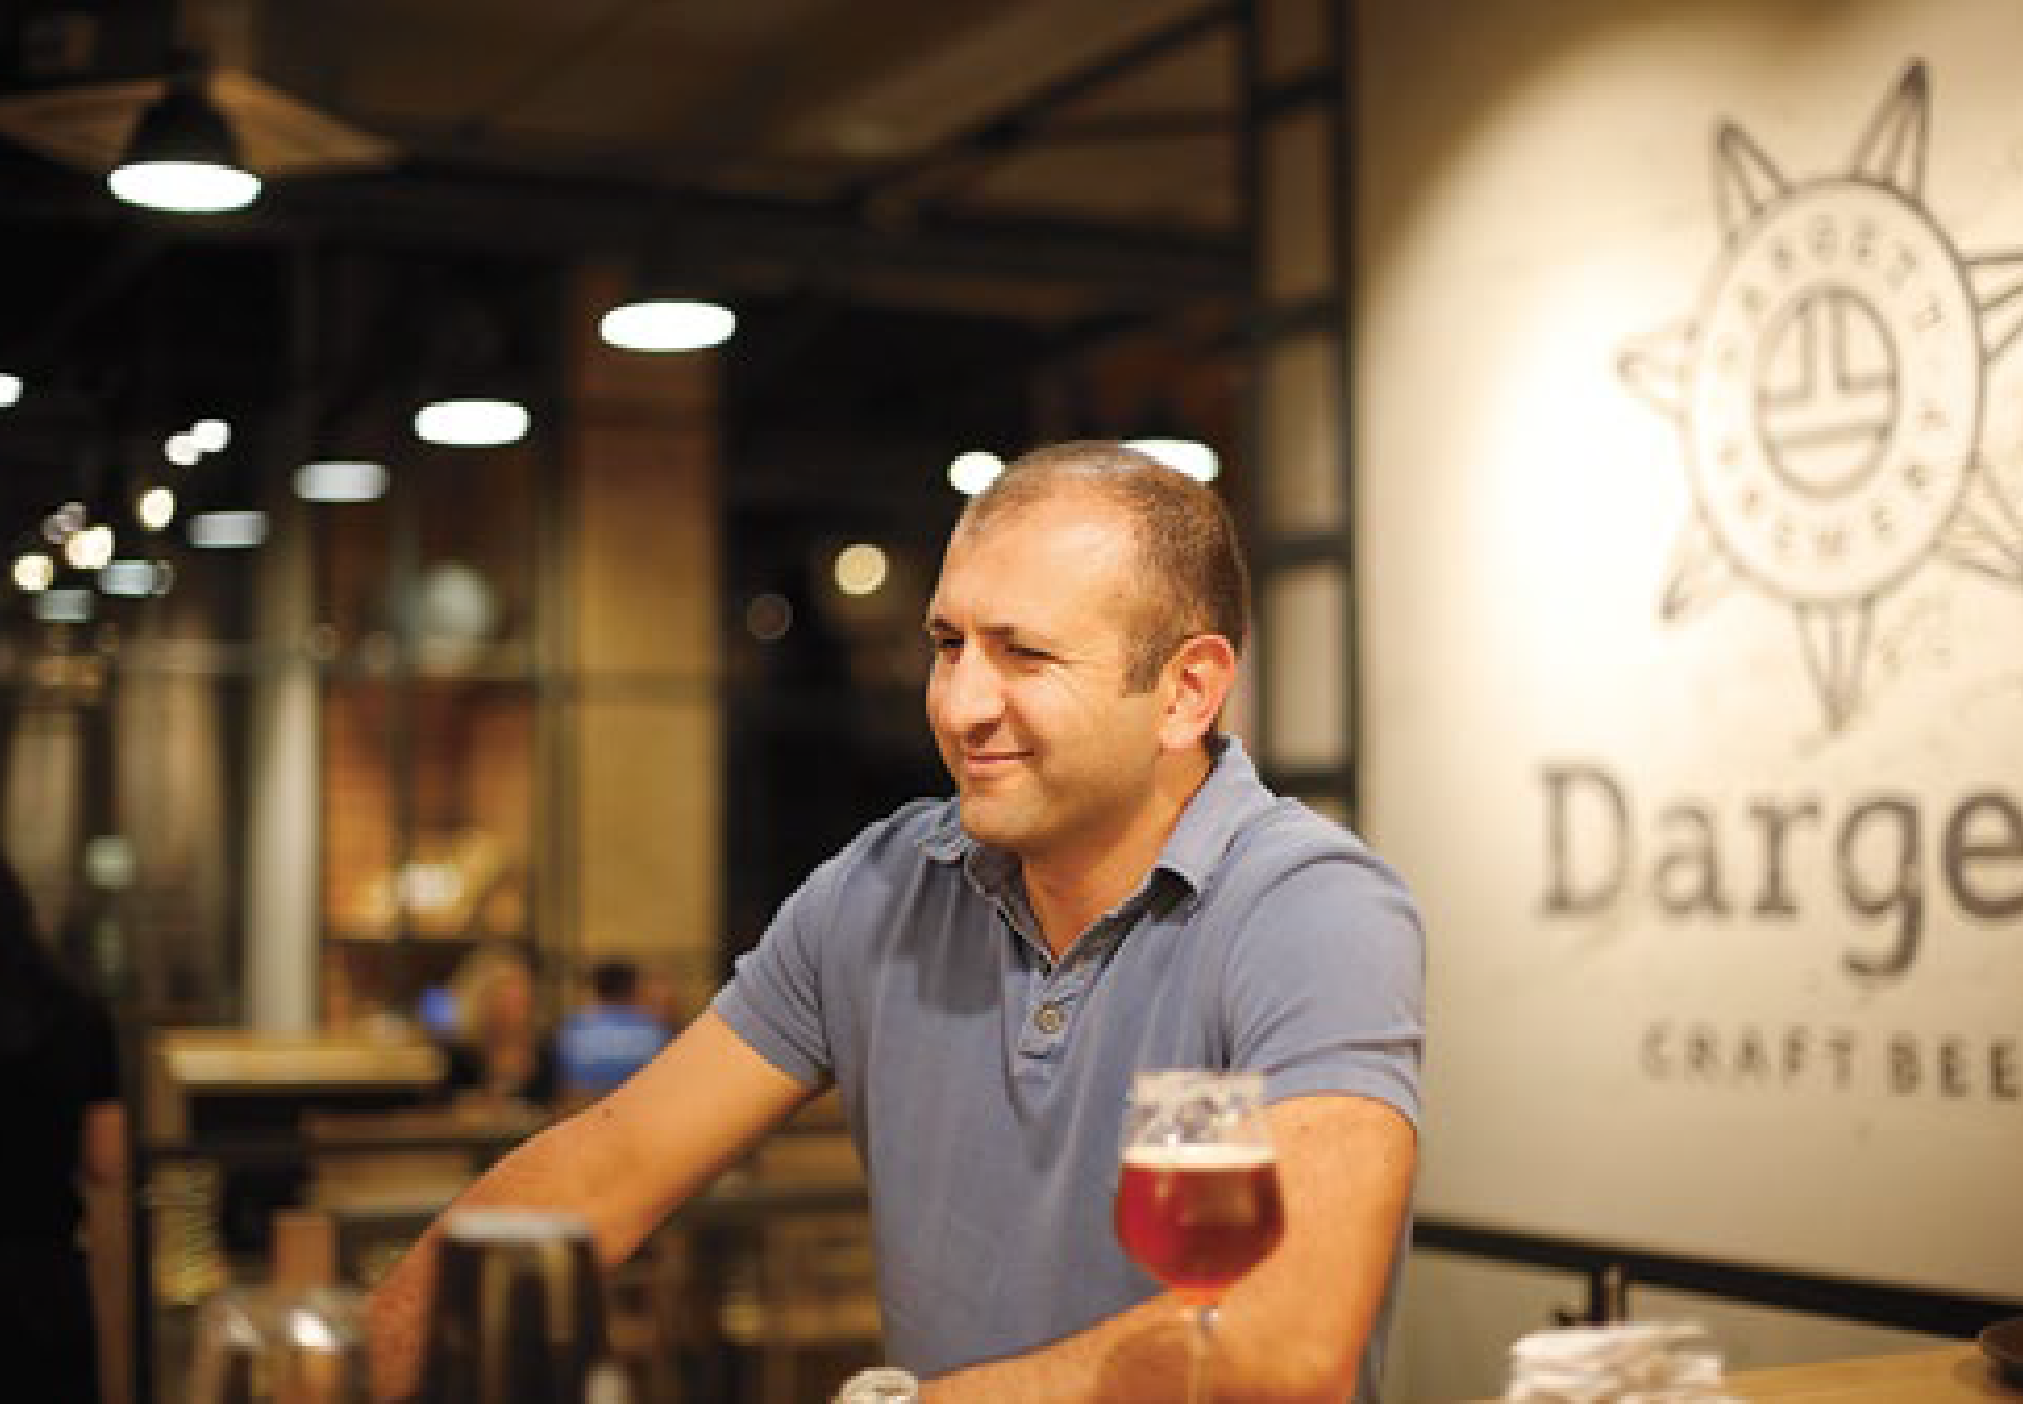 Dargett co-Founder, Aren Durgarian